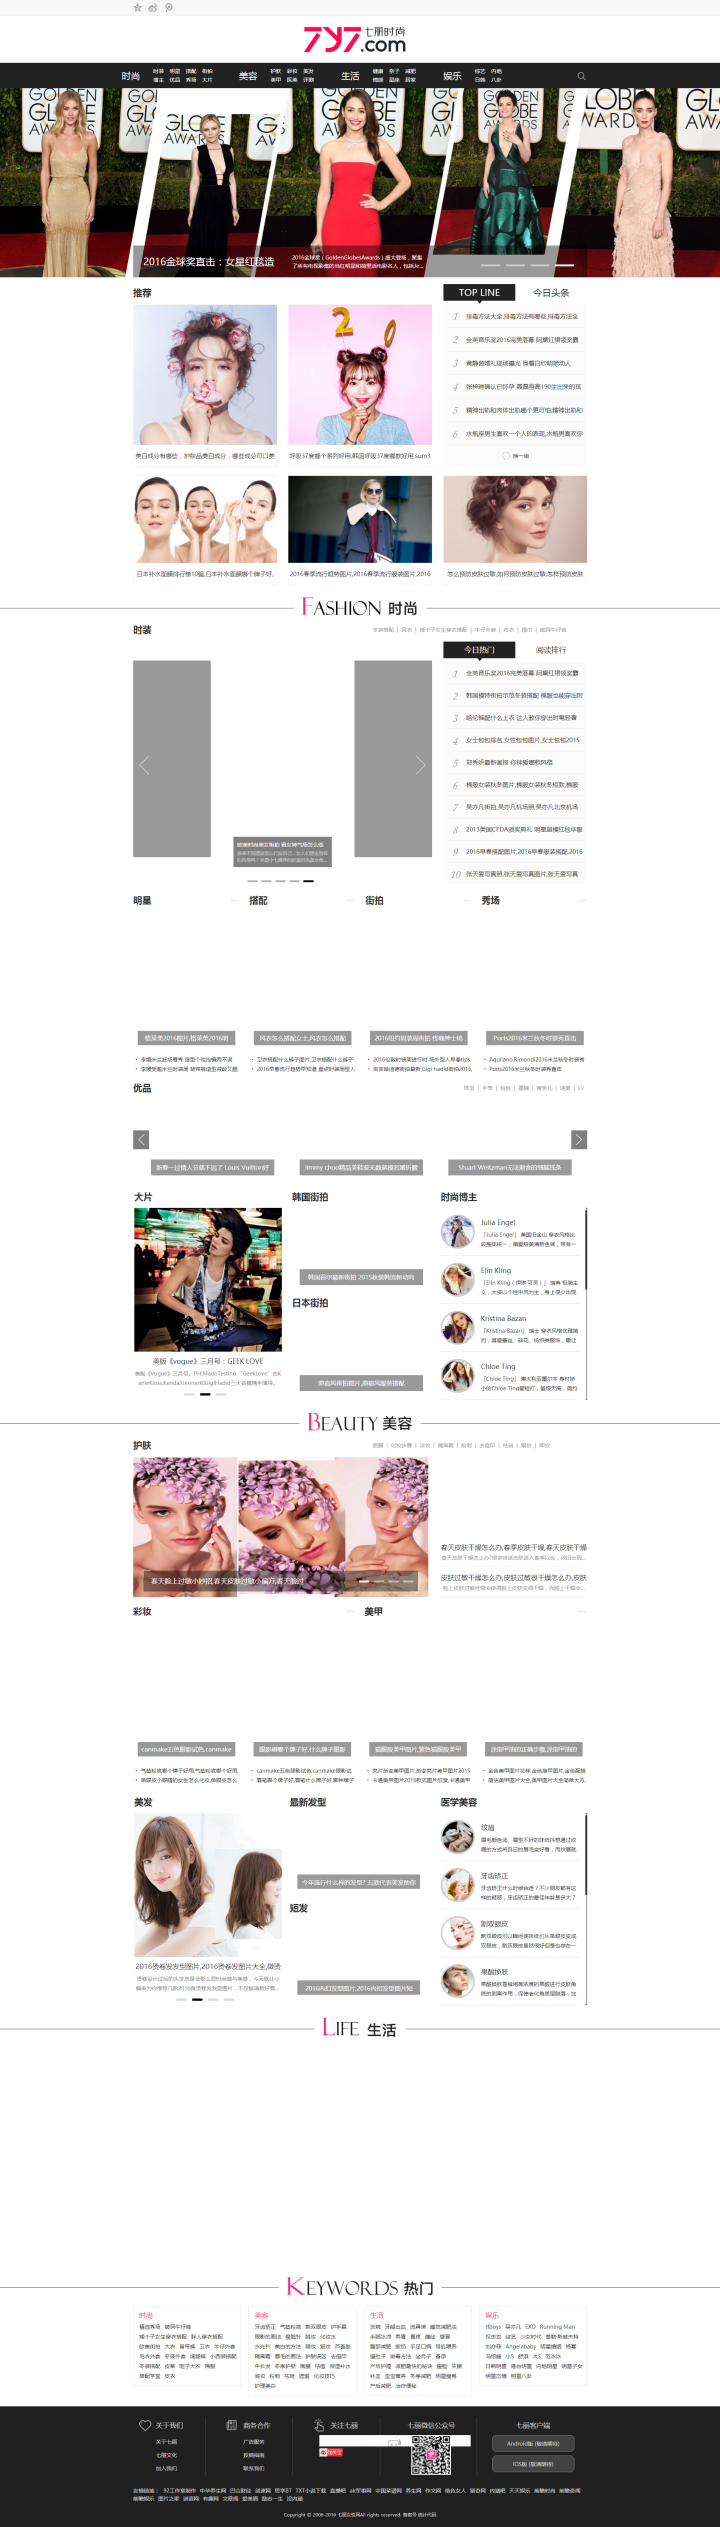 最新价值980元的仿《七丽时尚》女性网站，帝国cms内核，专业提供美容美体，护肤瘦身